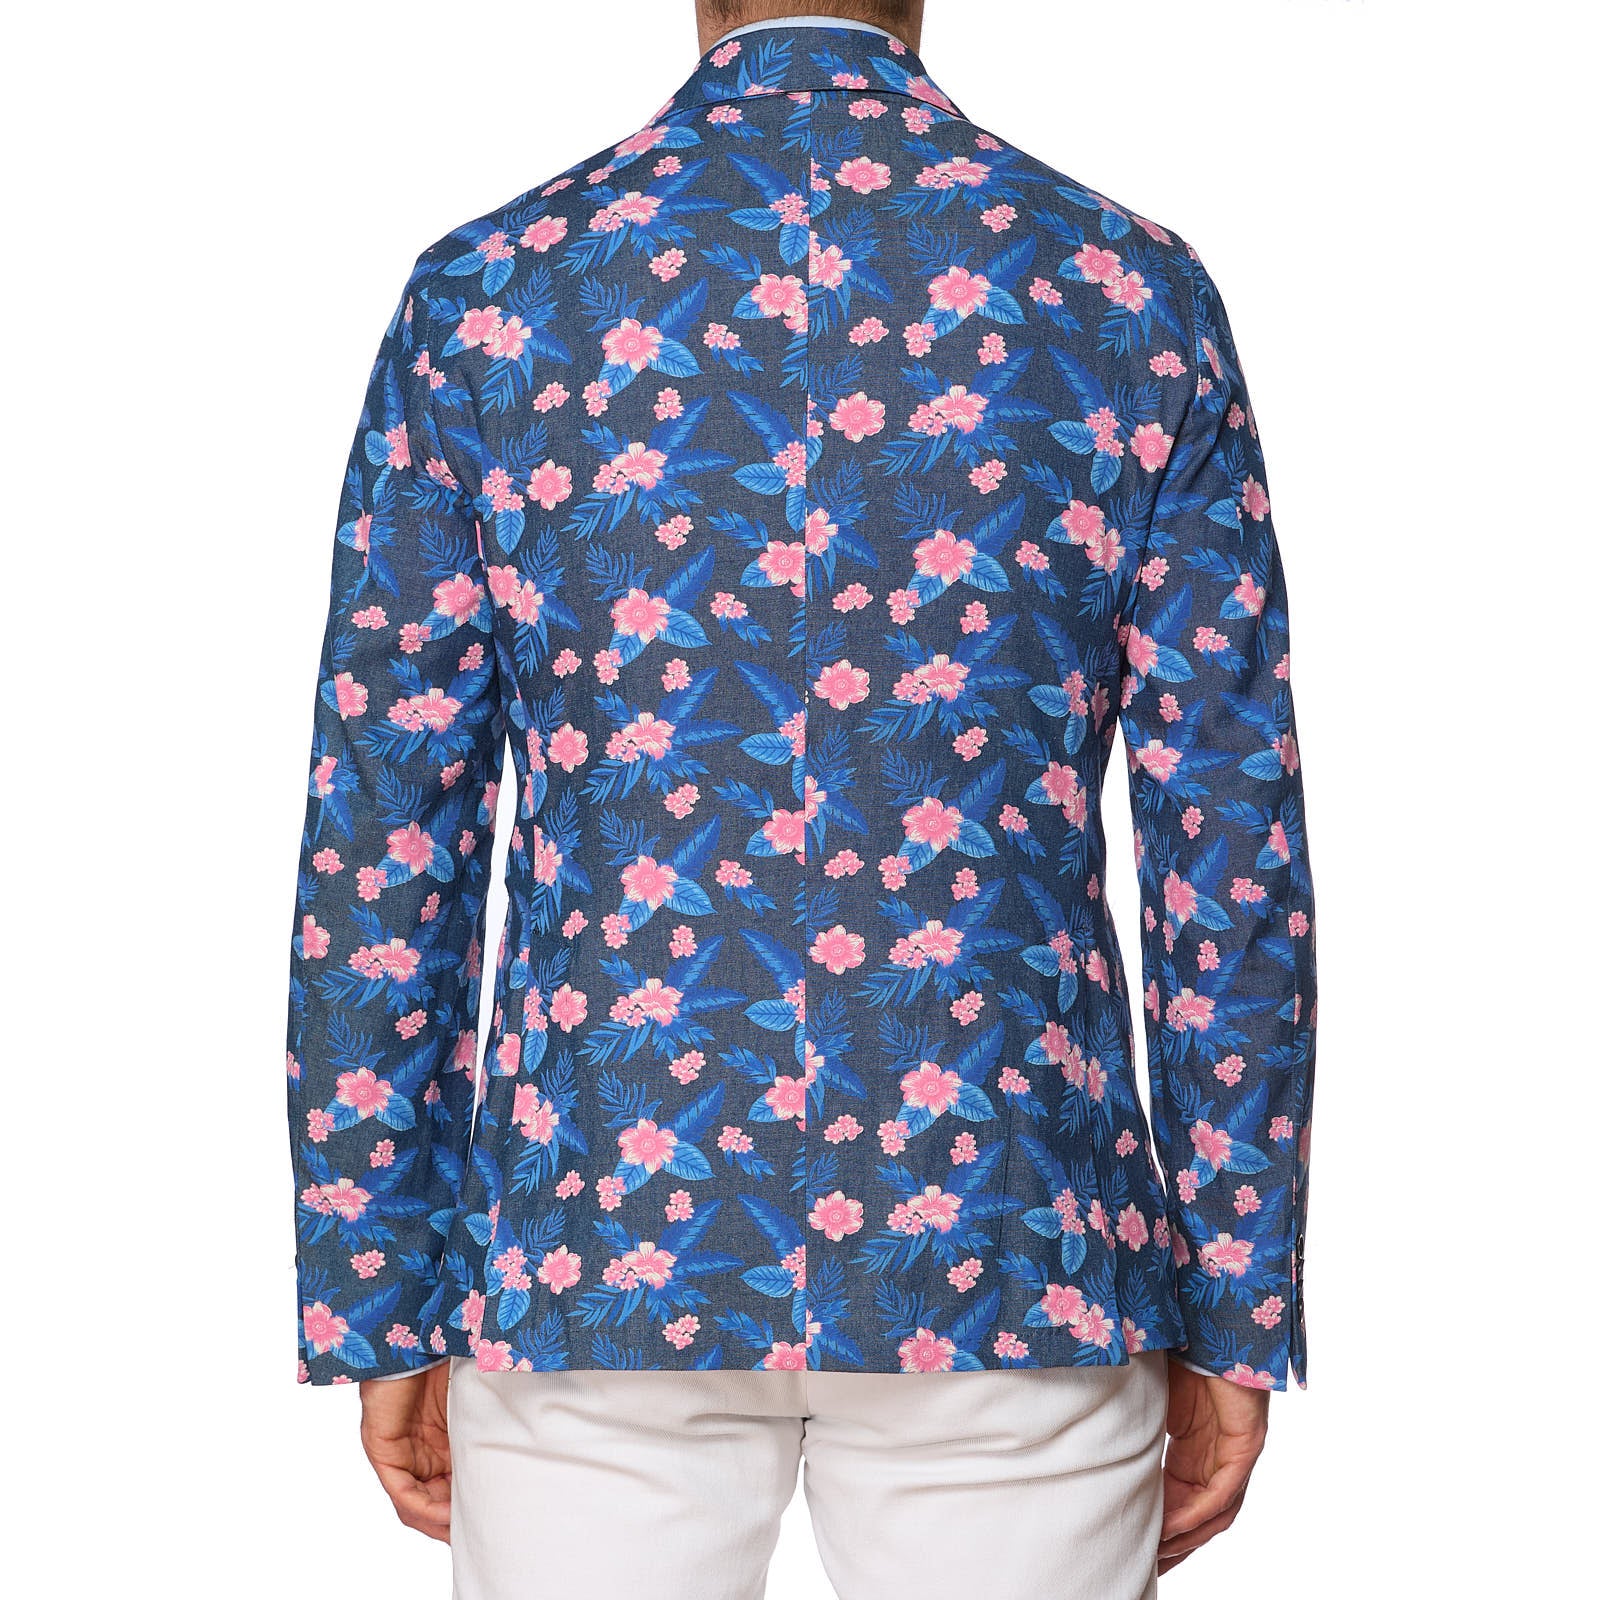 SARTORIA PARTENOPEA Blue-Pink Floral Design Cotton Jacket EU 50 NEW US 40 Current Model